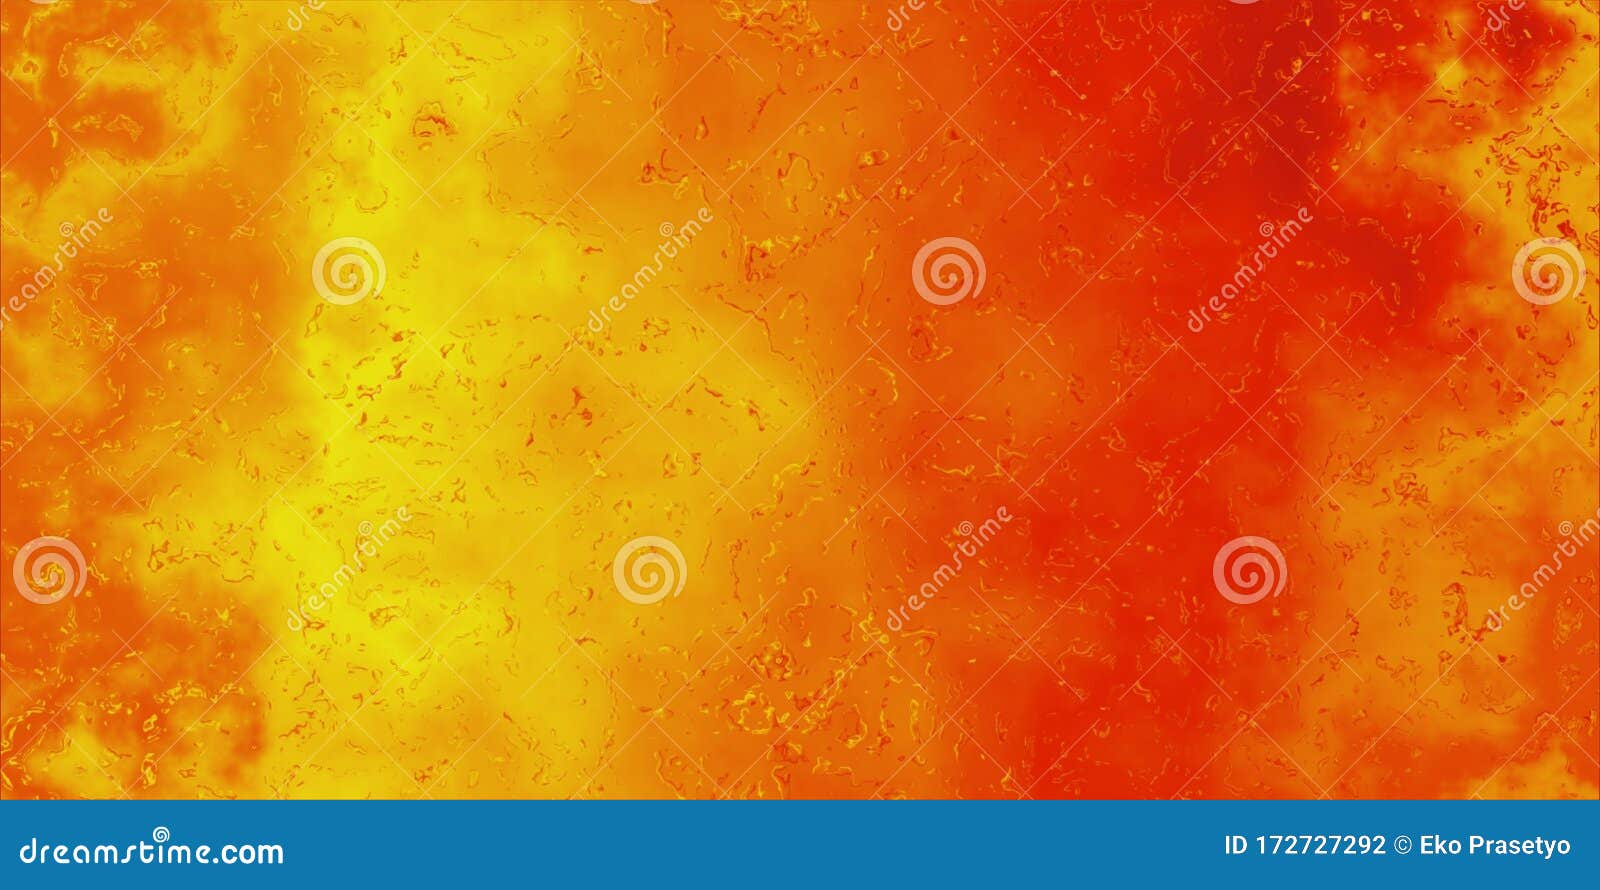 Nếu bạn yêu thích màu sắc, bạn sẽ rất thích hình ảnh với nền đỏ cam này. Với sự kết hợp giữa màu đỏ sôi động và cam tươi sáng, nó sẽ làm nổi bật cho bất kỳ hình ảnh nào bạn muốn thêm sinh khí.